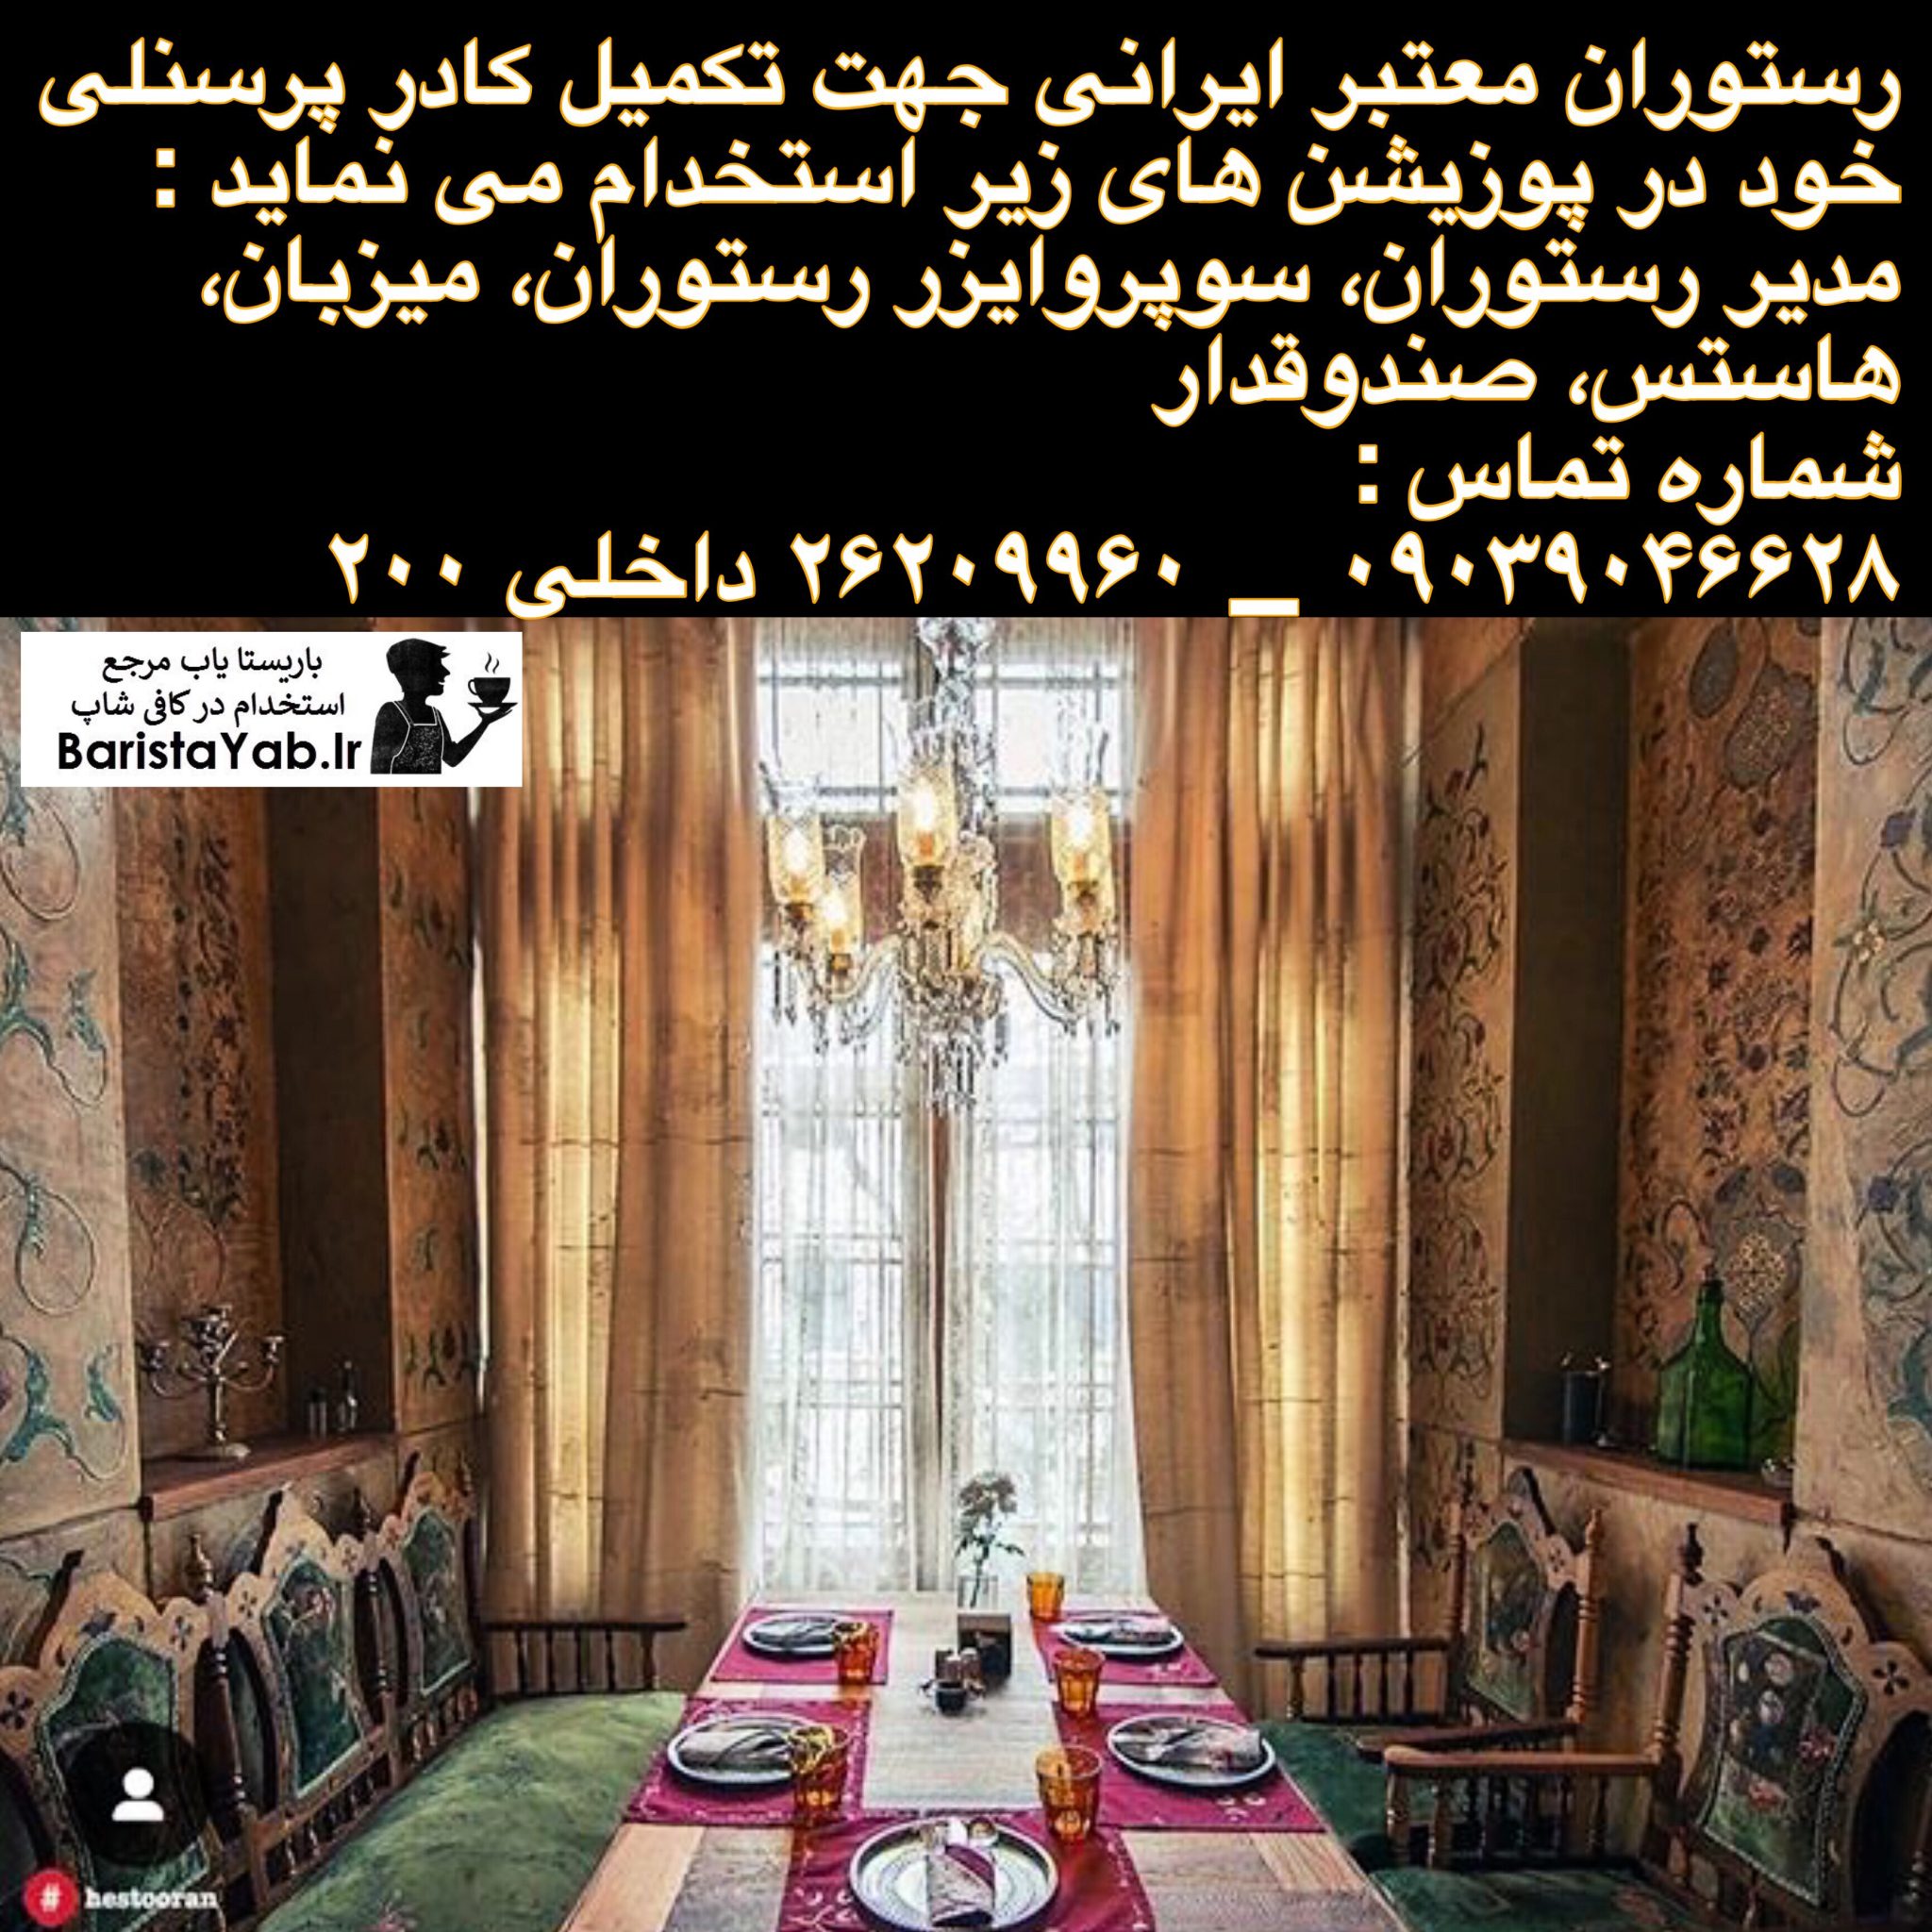 رستوران معتبر ایرانی جهت تکمیل کادر خود استخدام می نماید